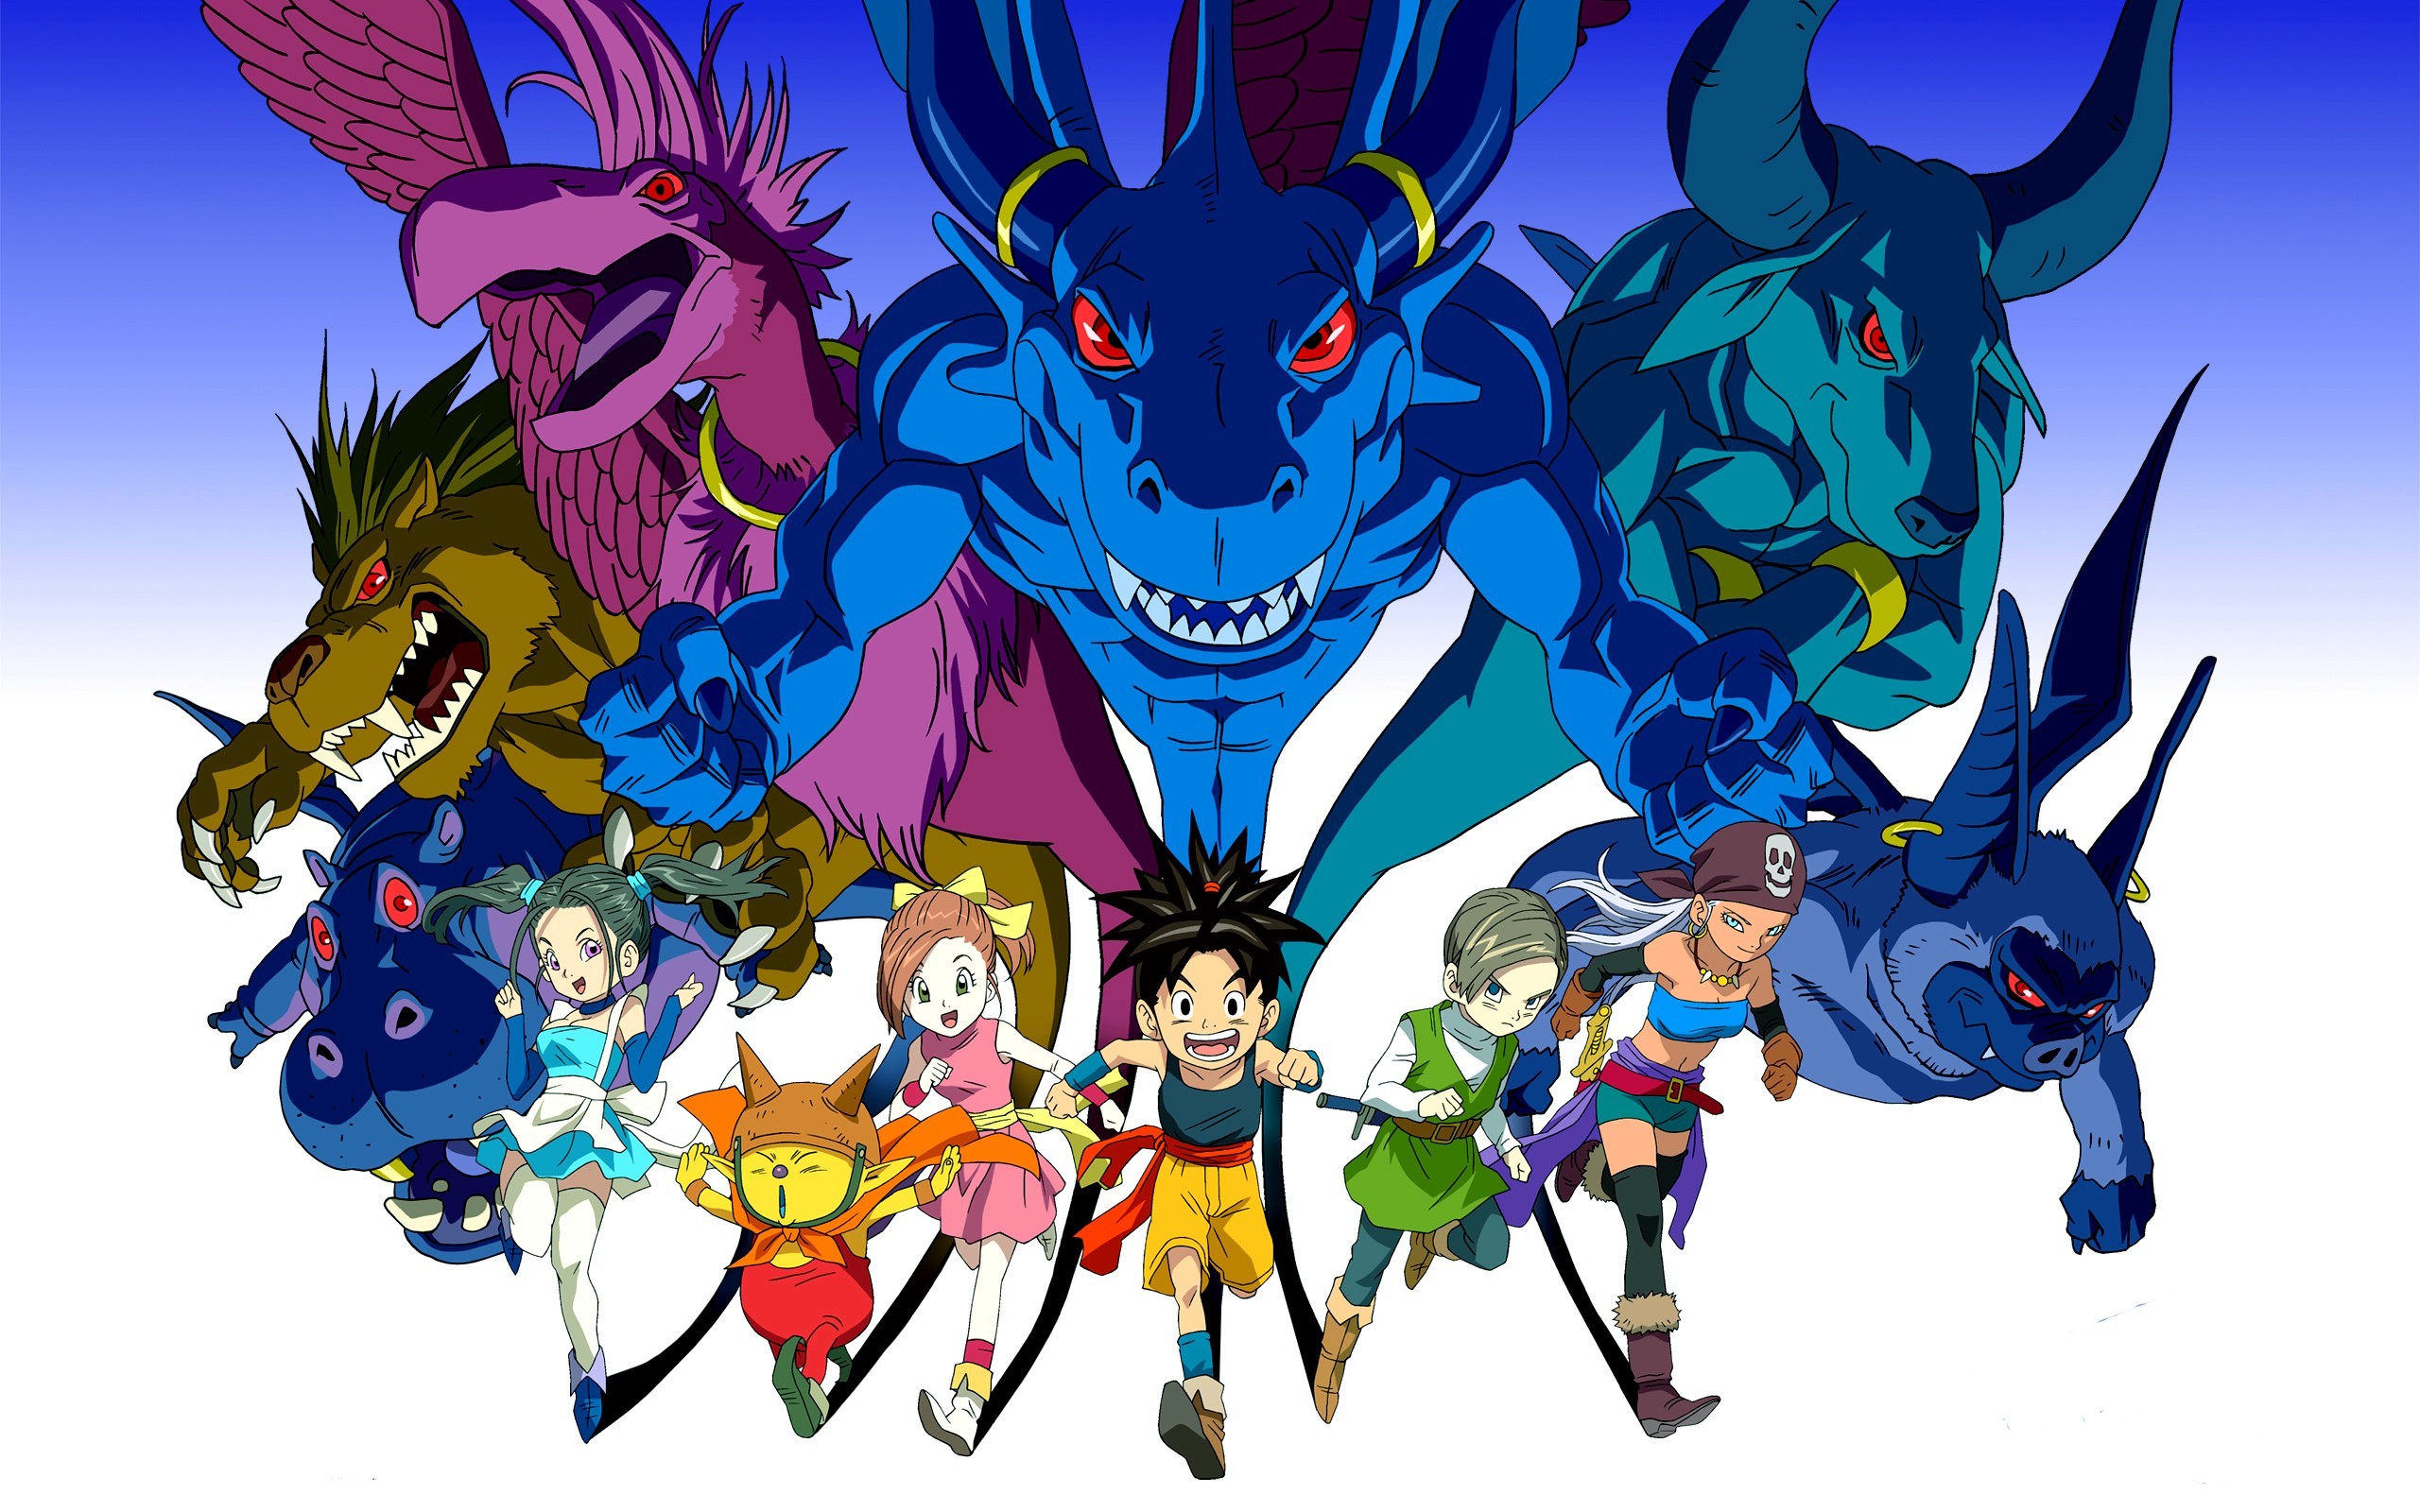 Blue Dragon Anime - 2560x1600 Wallpaper 